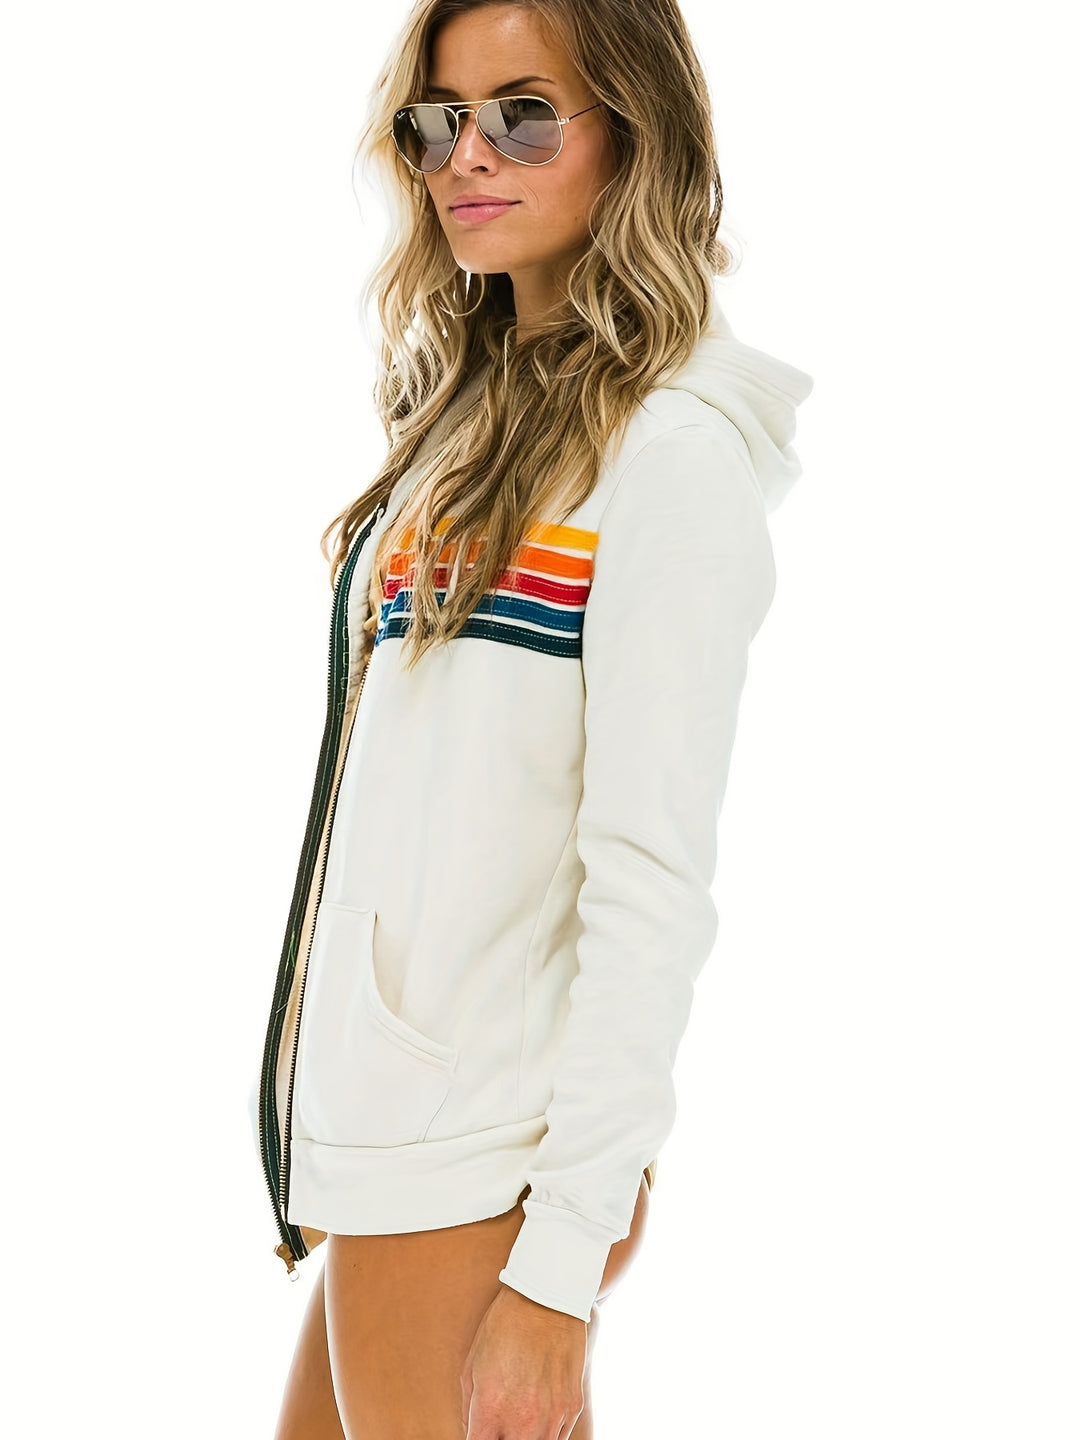 Rainbow Striped Zip Up Hoodie, Casual Long Sleeve Drawstring Hoodies Sweatshirt, Women's Clothing